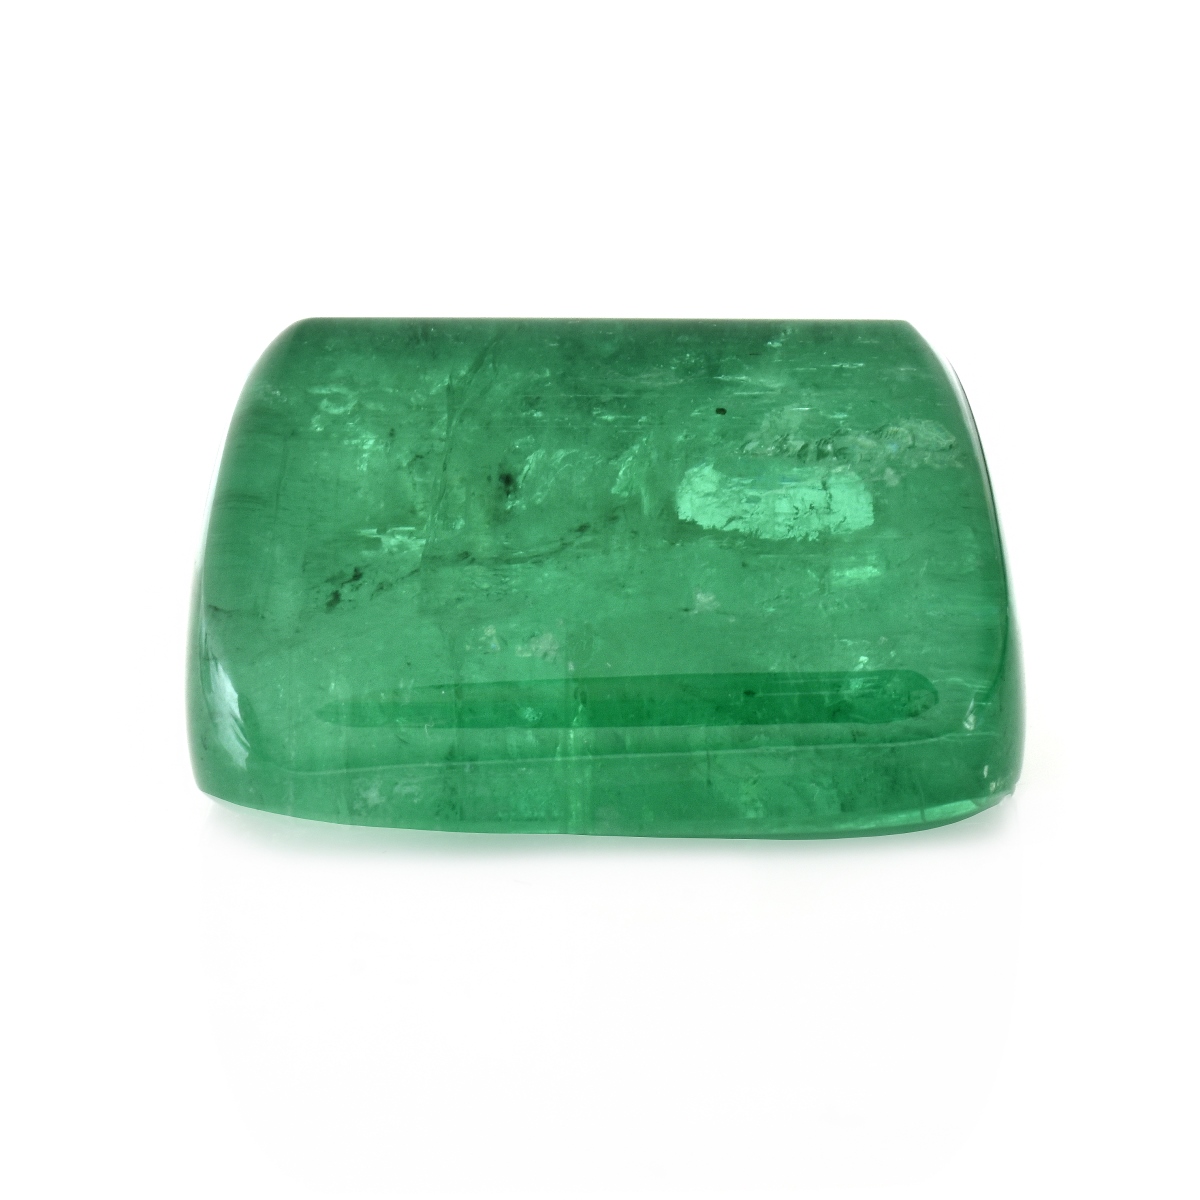 AGL 170.21 Carat Emerald